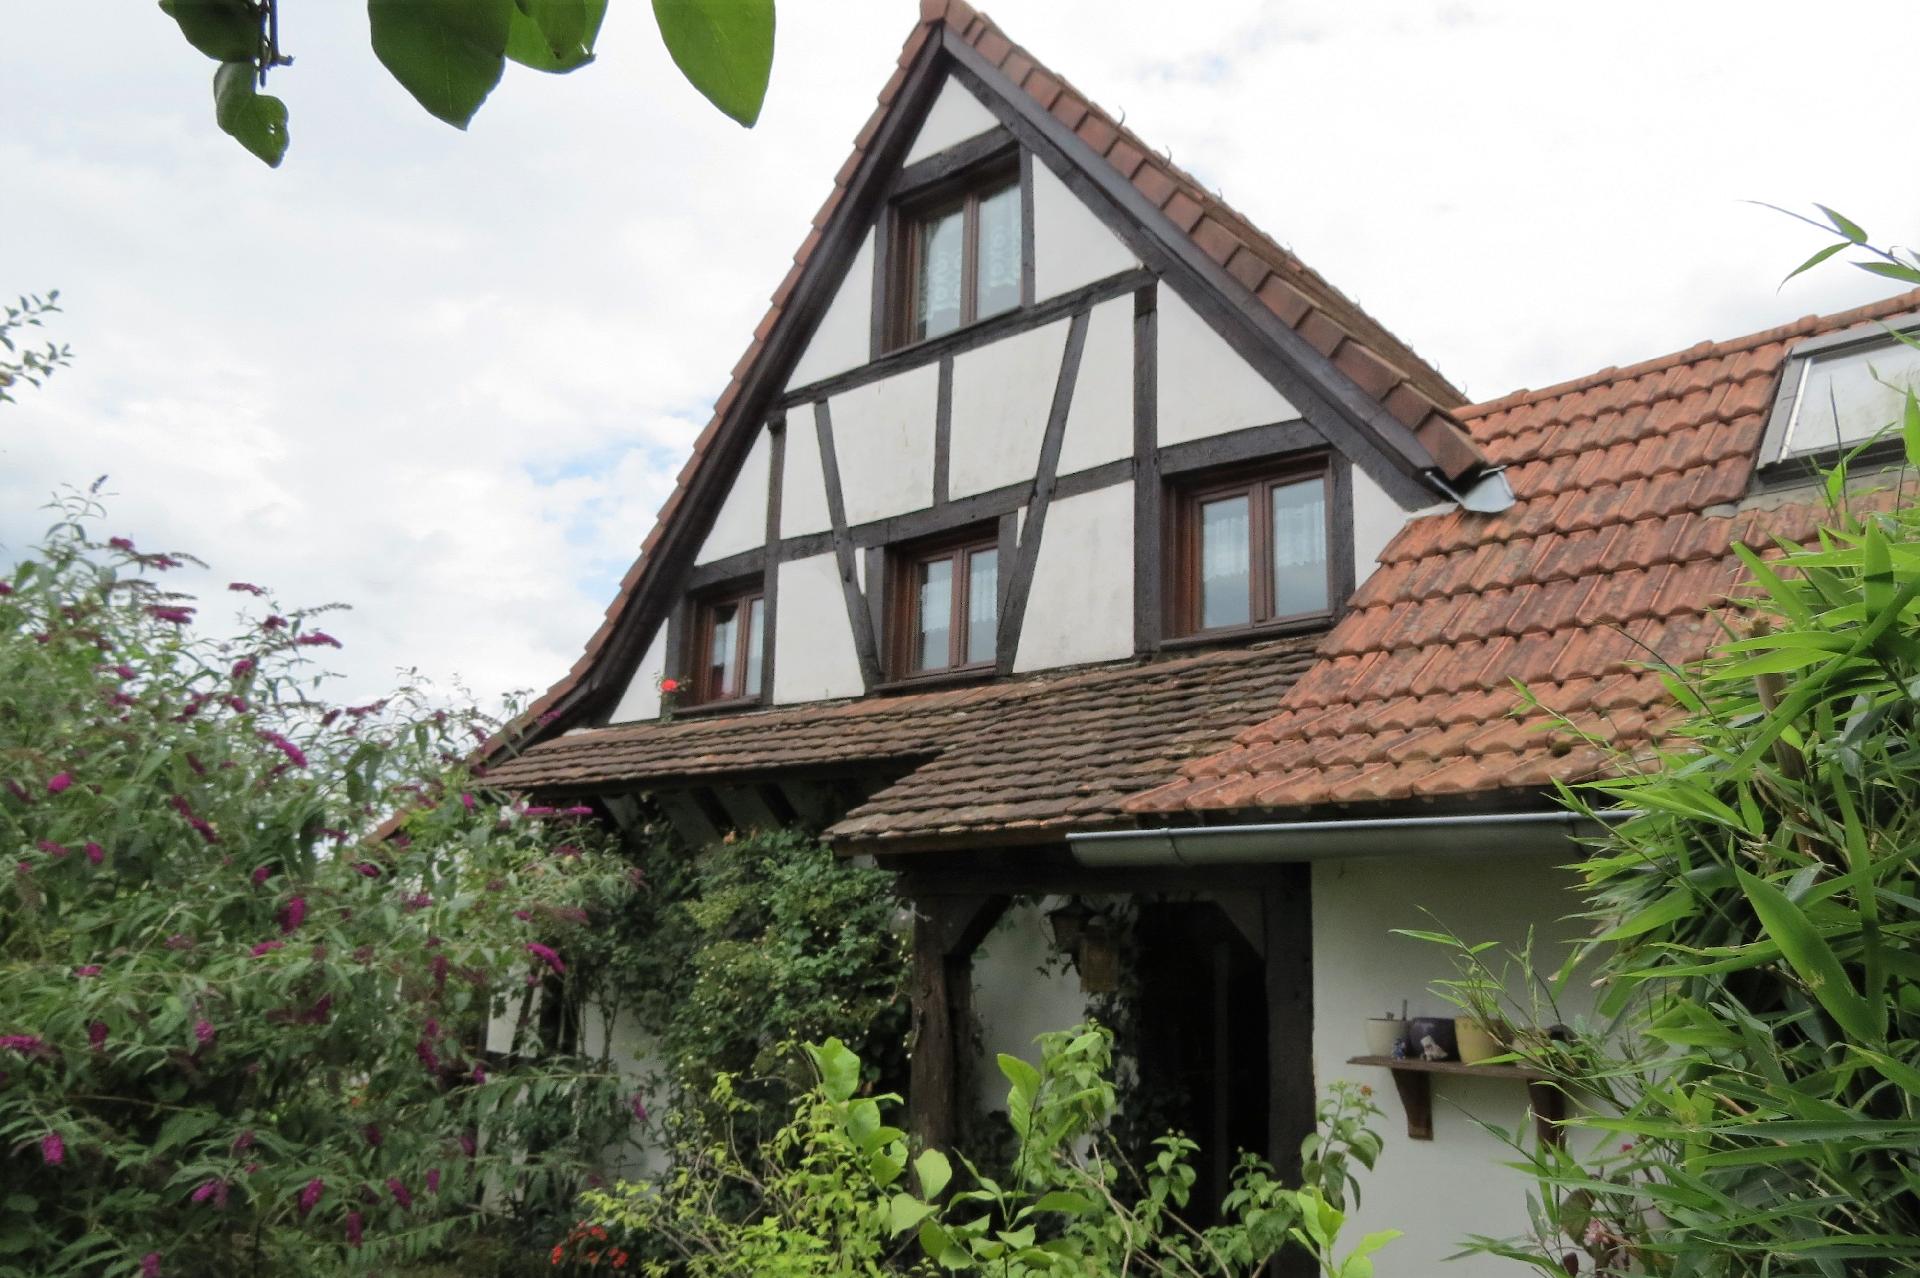 Ferienwohnung in Betschdorf mit Grill, Garten und  Ferienhaus in Frankreich